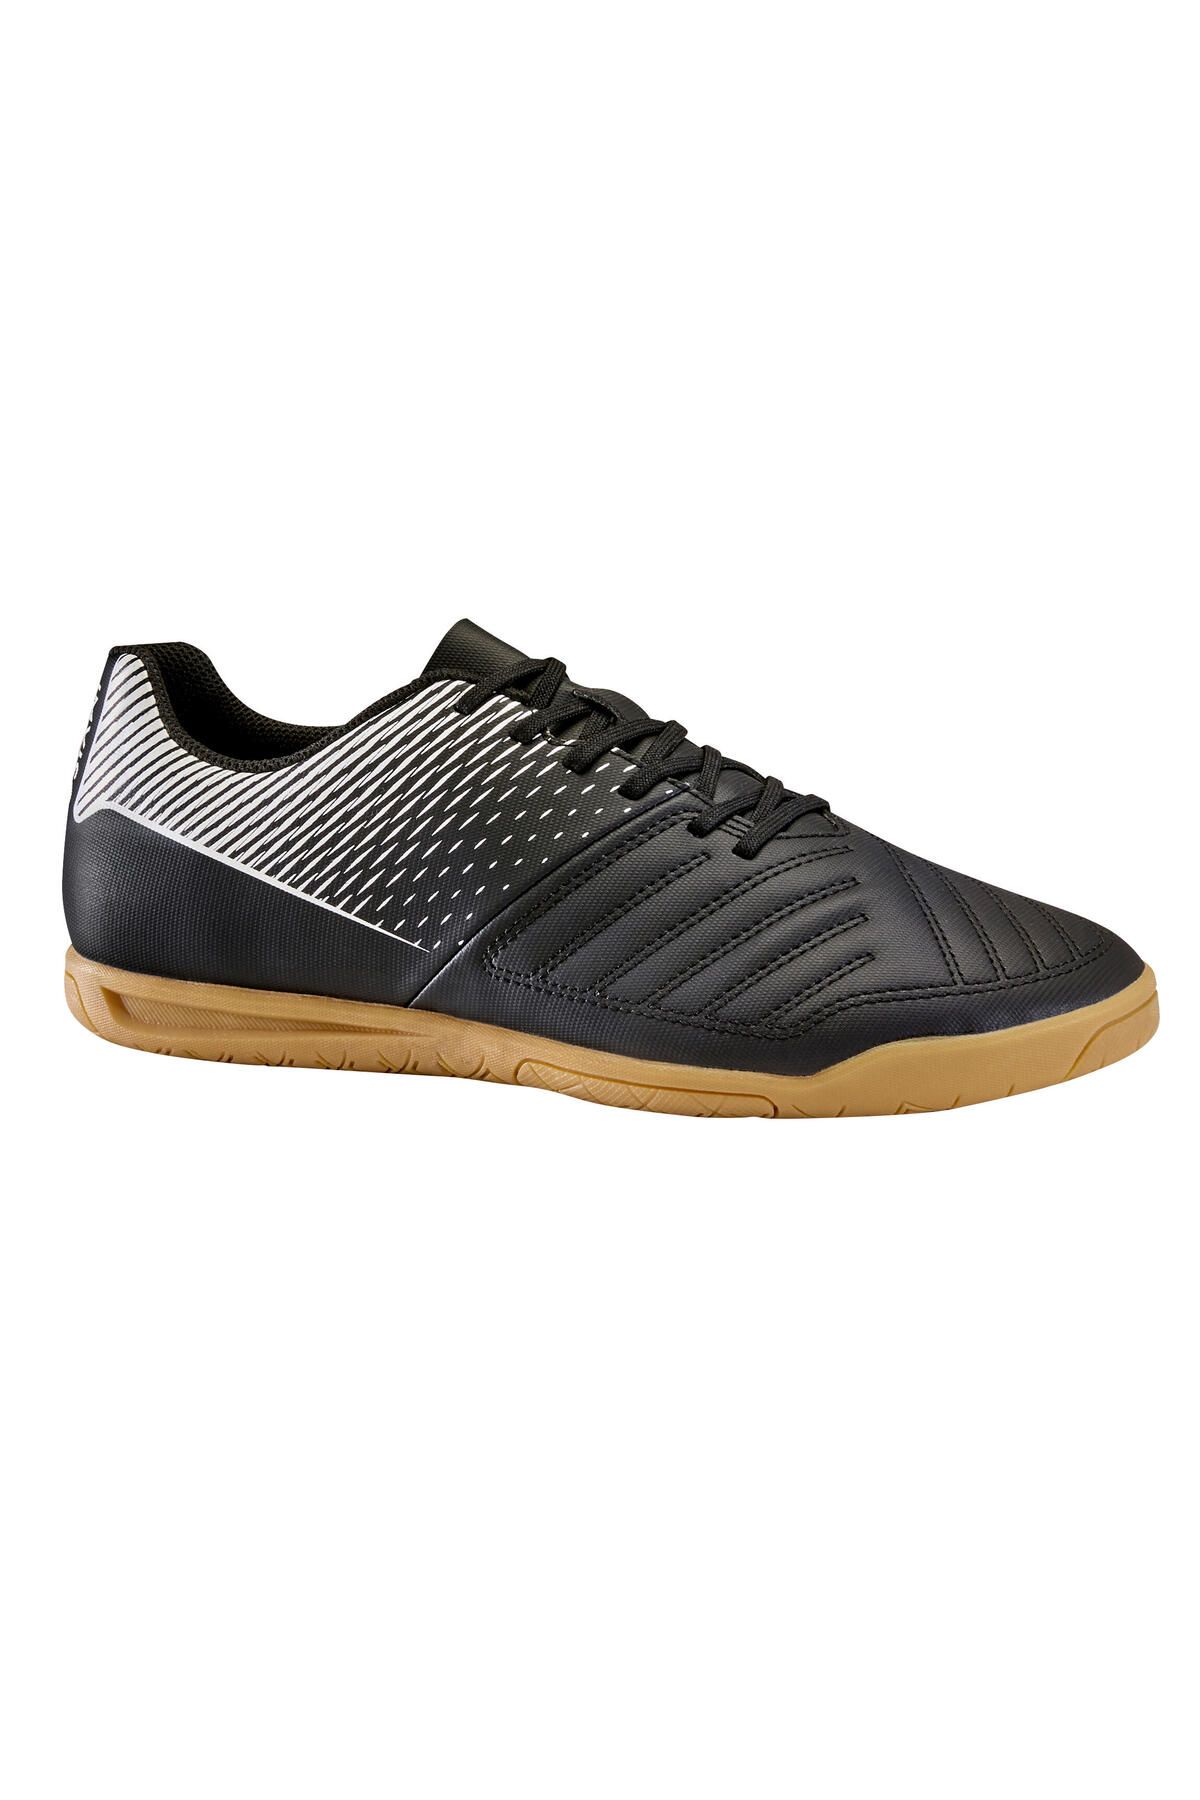 Decathlon Yetişkin Futsal Ayakkabısı / Salon Ayakkabısı - Siyah - 100